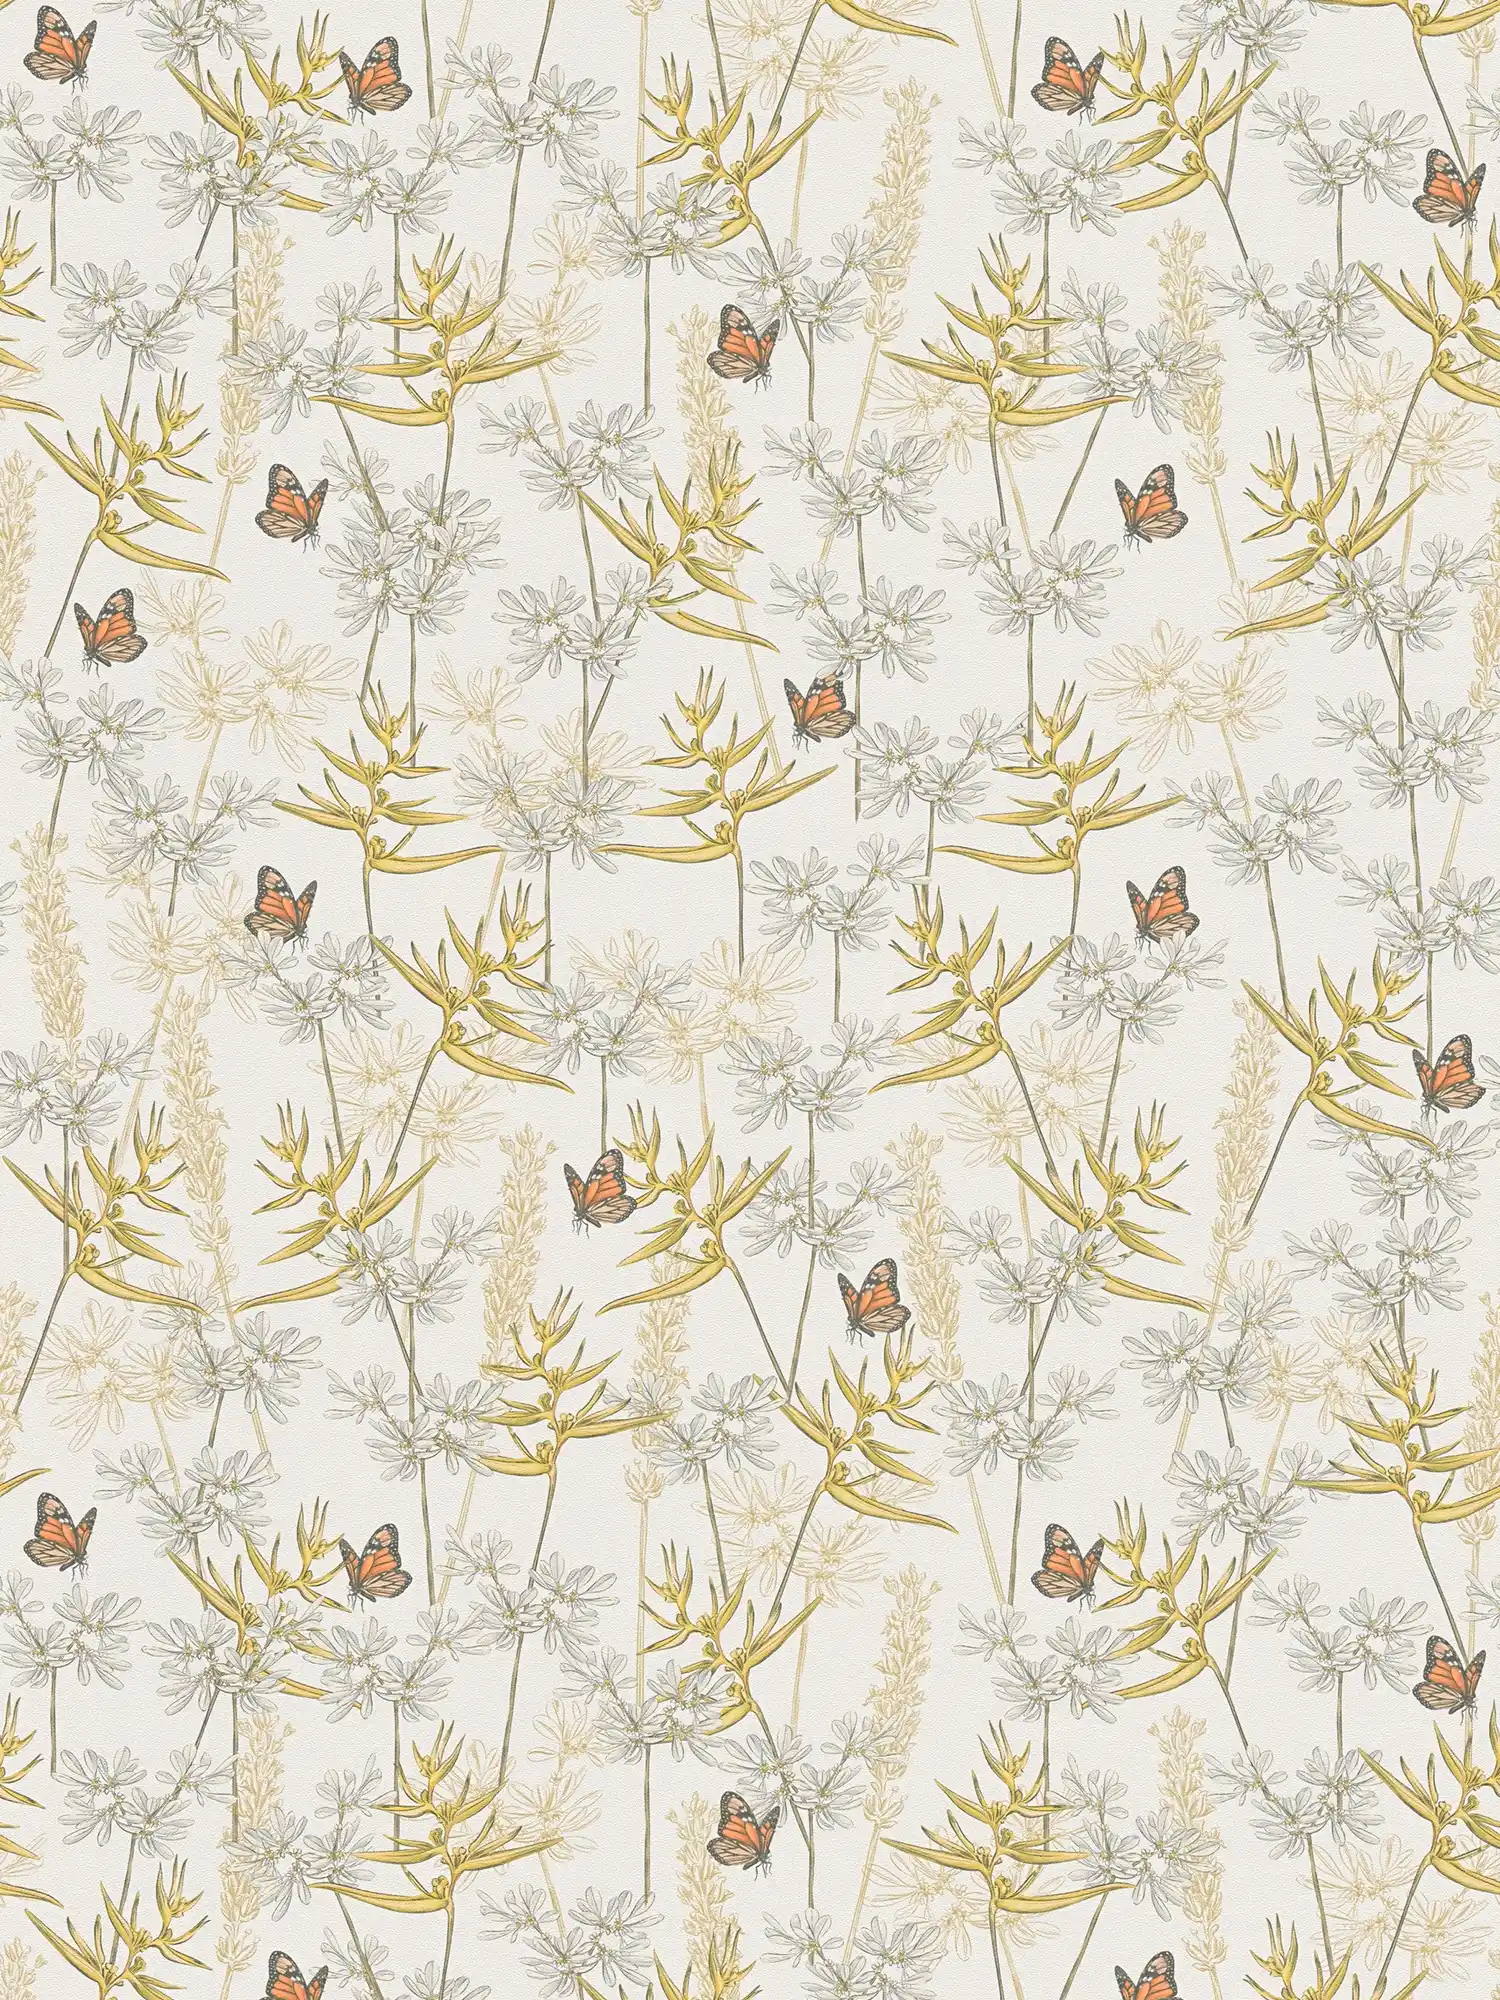 Tapete im floralen Stil mit Gräsern & Schmetterlingen strukturiert matt – Weiß, Gelb, Grau
